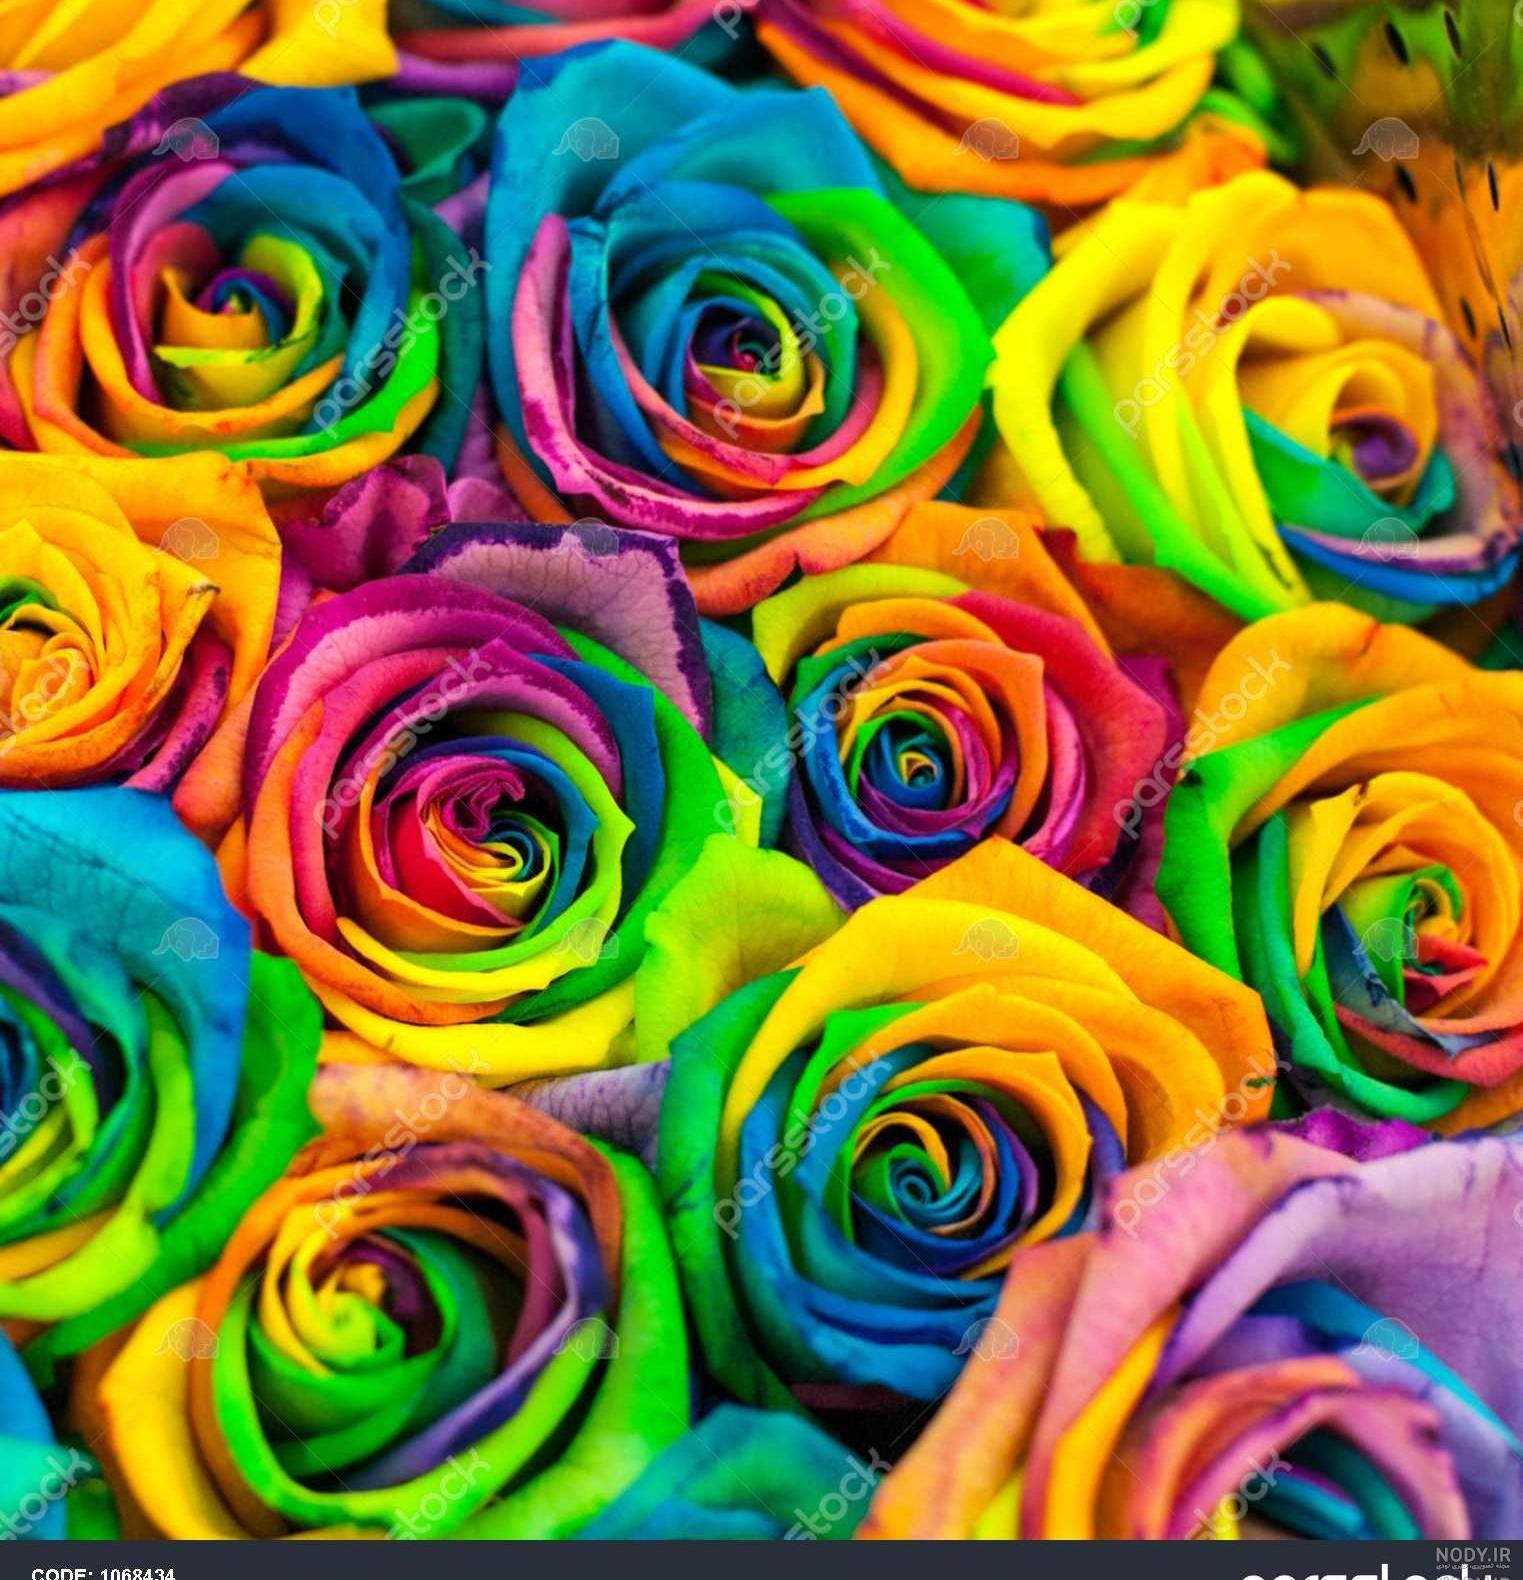 عکس گلهای رنگی زیبا